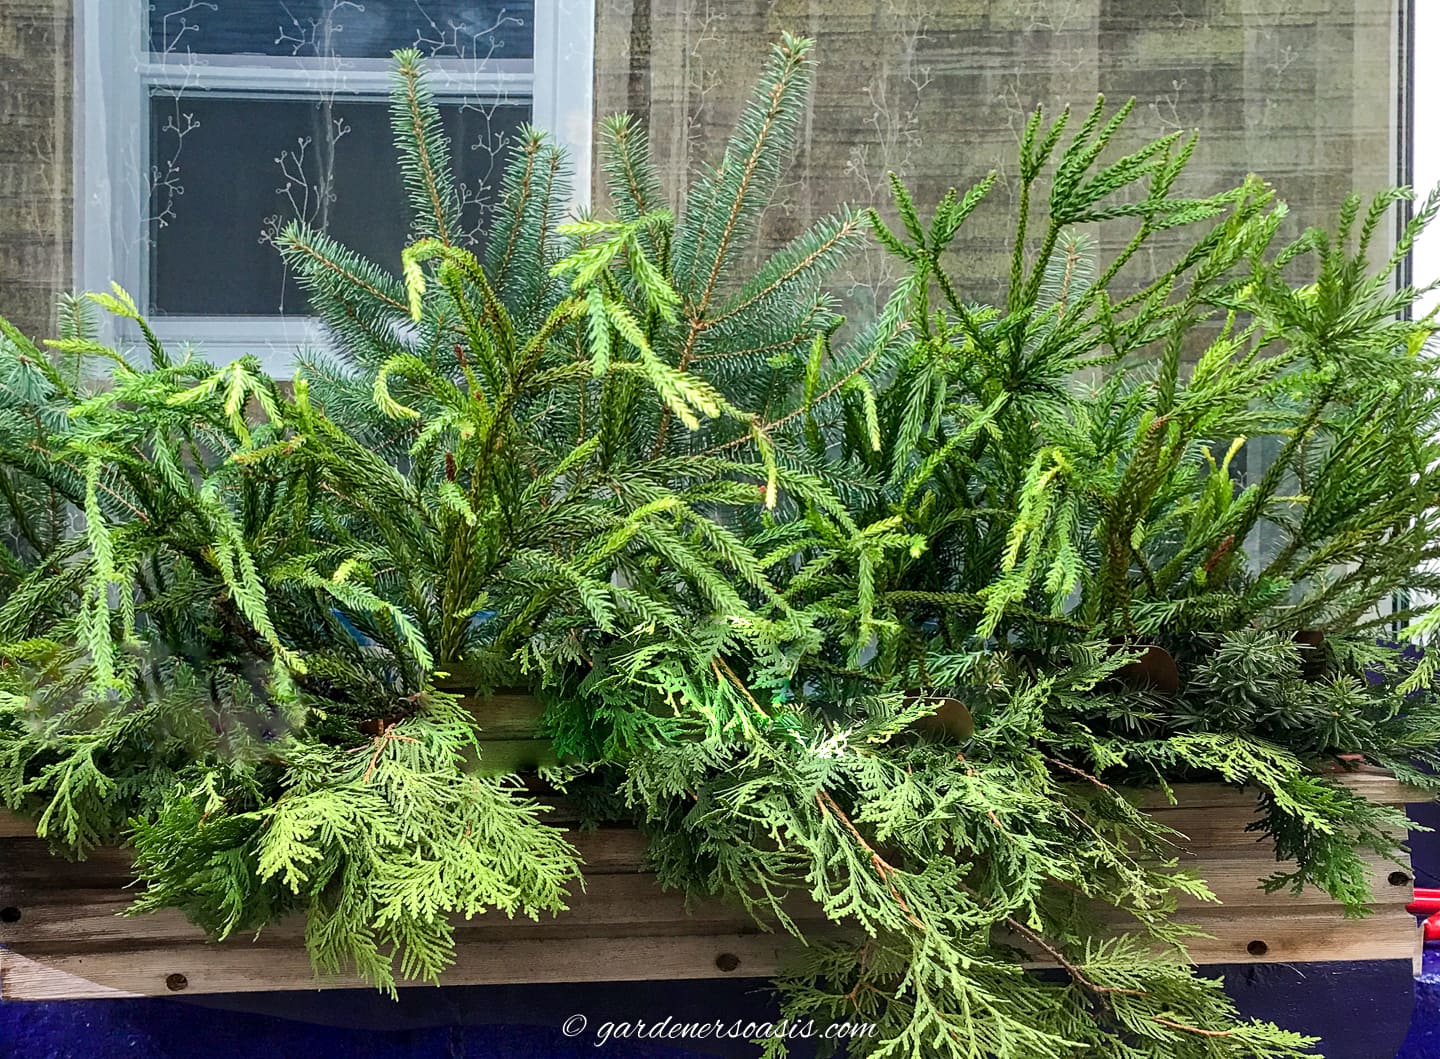 An evergreen-filled window box